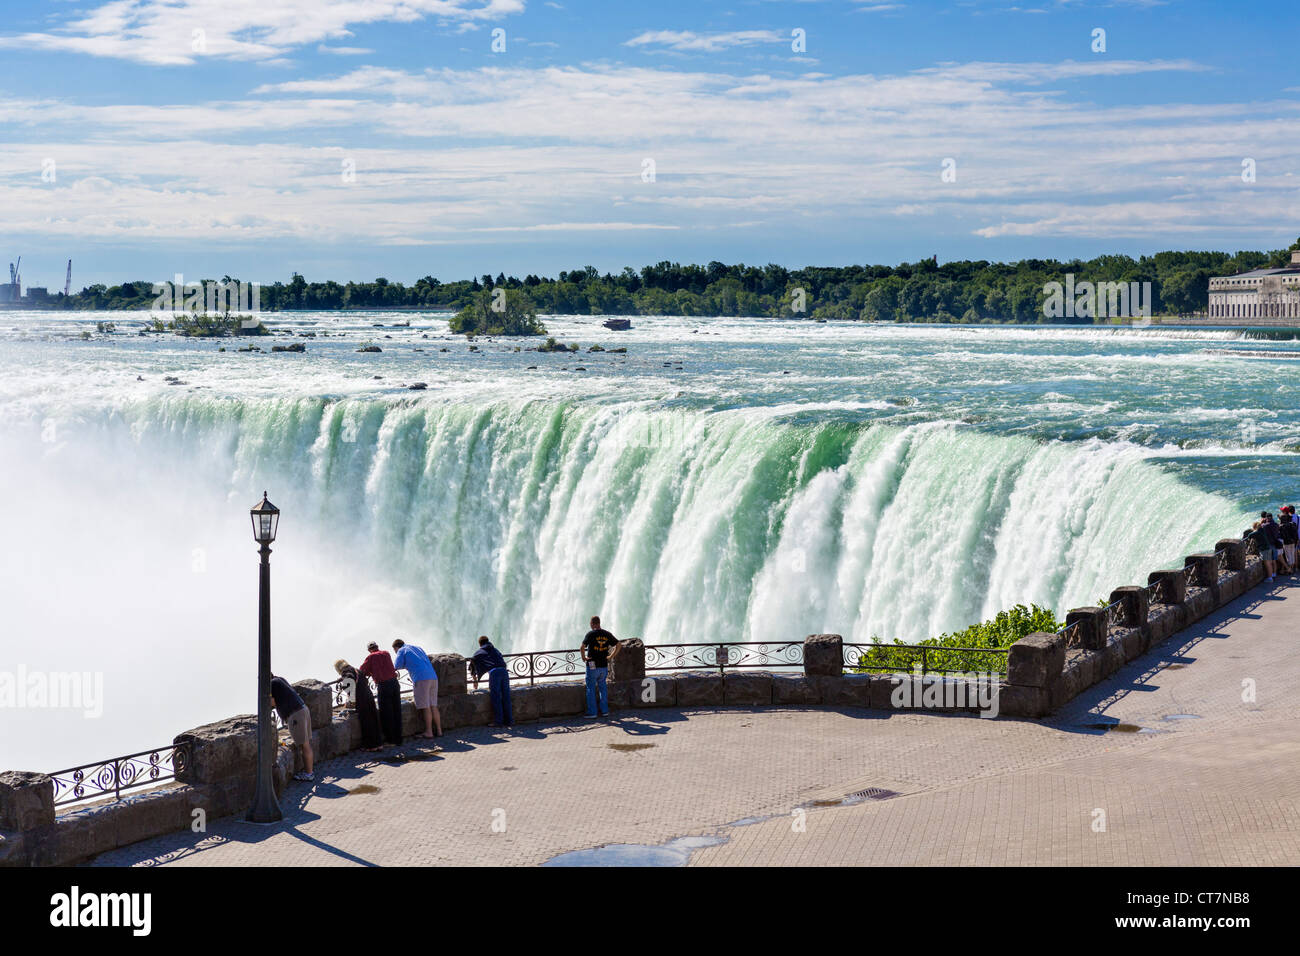 Los turistas ver las cataratas de La Herradura desde el lado Canadiense, Niagara Falls, Ontario, Canadá Foto de stock